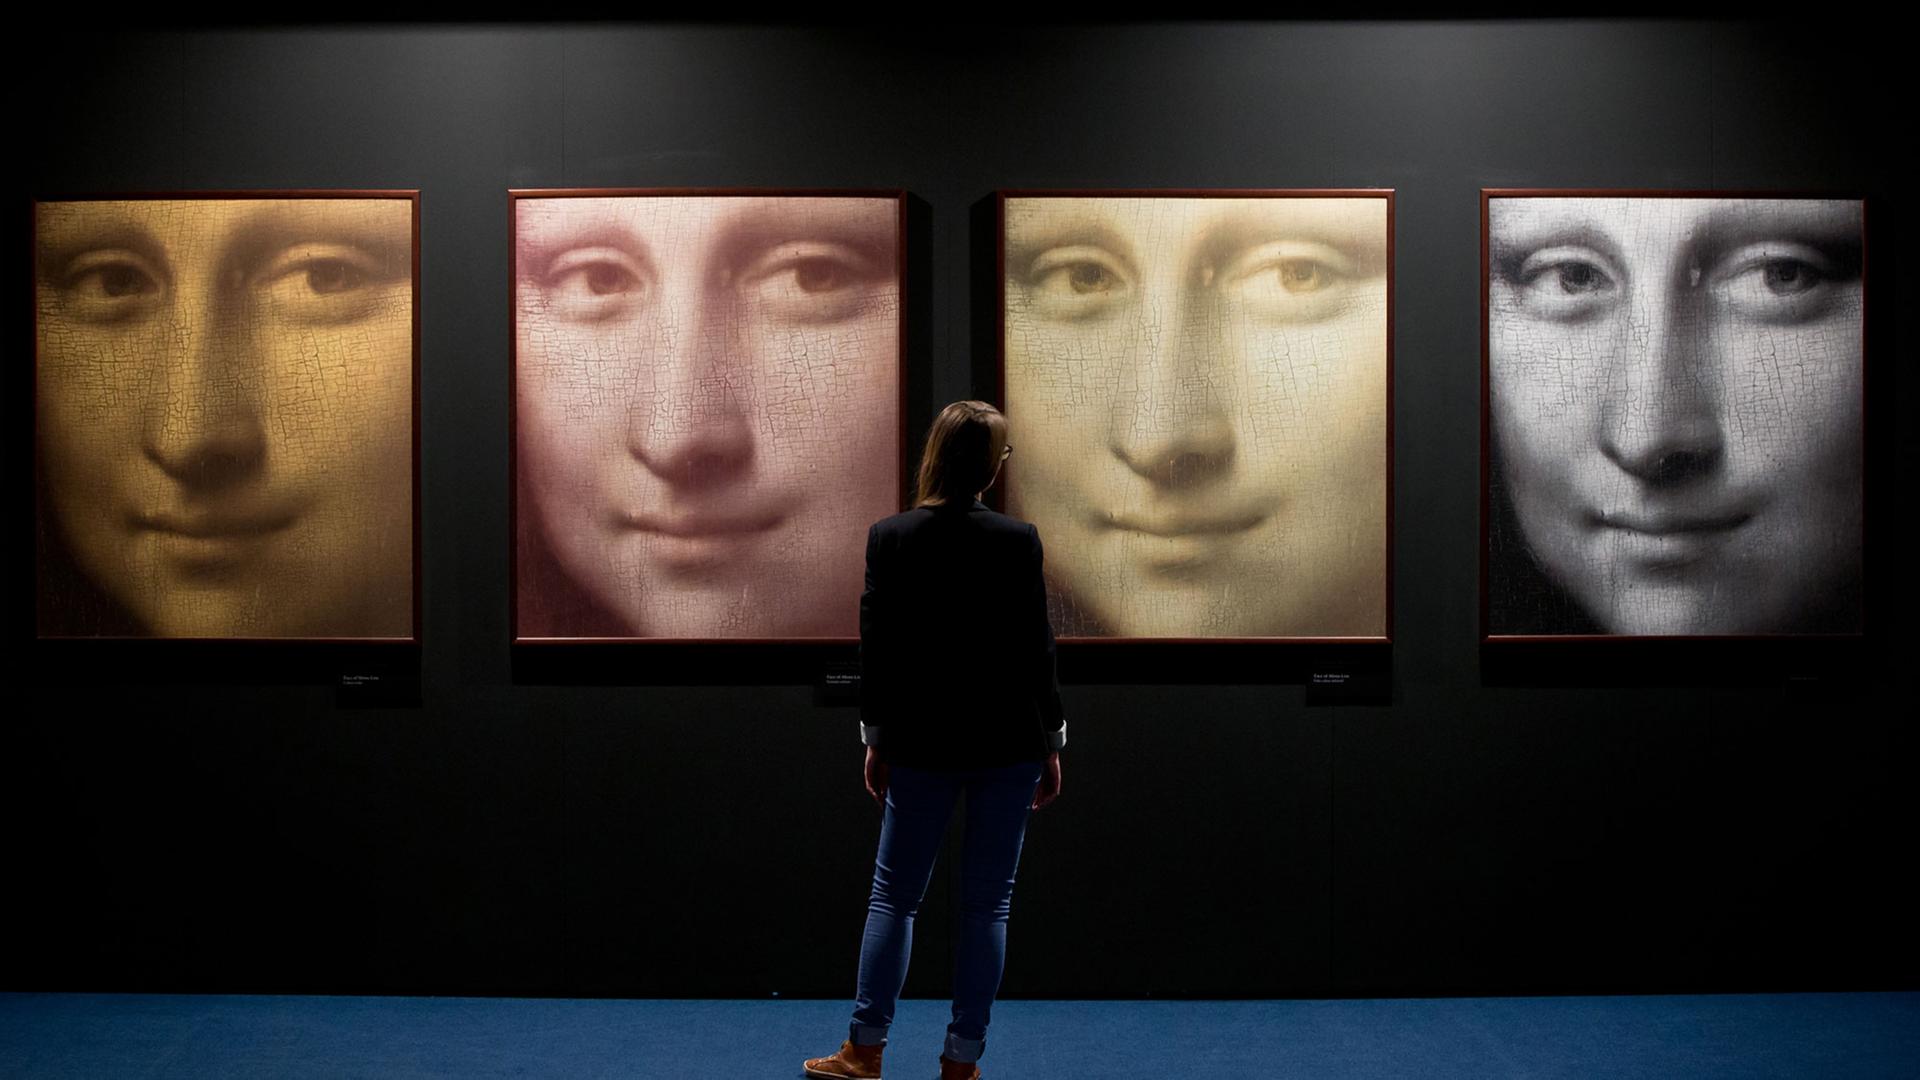 Vier Detailaufnahmen des Gesichts der Mona Lisa, aus dem gleichnamigen Gemälde von Leonardo da Vinci, in Infrarot, den ursprünglichen, heutigen und falschen Farben sind am 09.04.2014 in Nürnberg (Bayern) während der Ausstellung "Da Vinci - das Genie" zu s